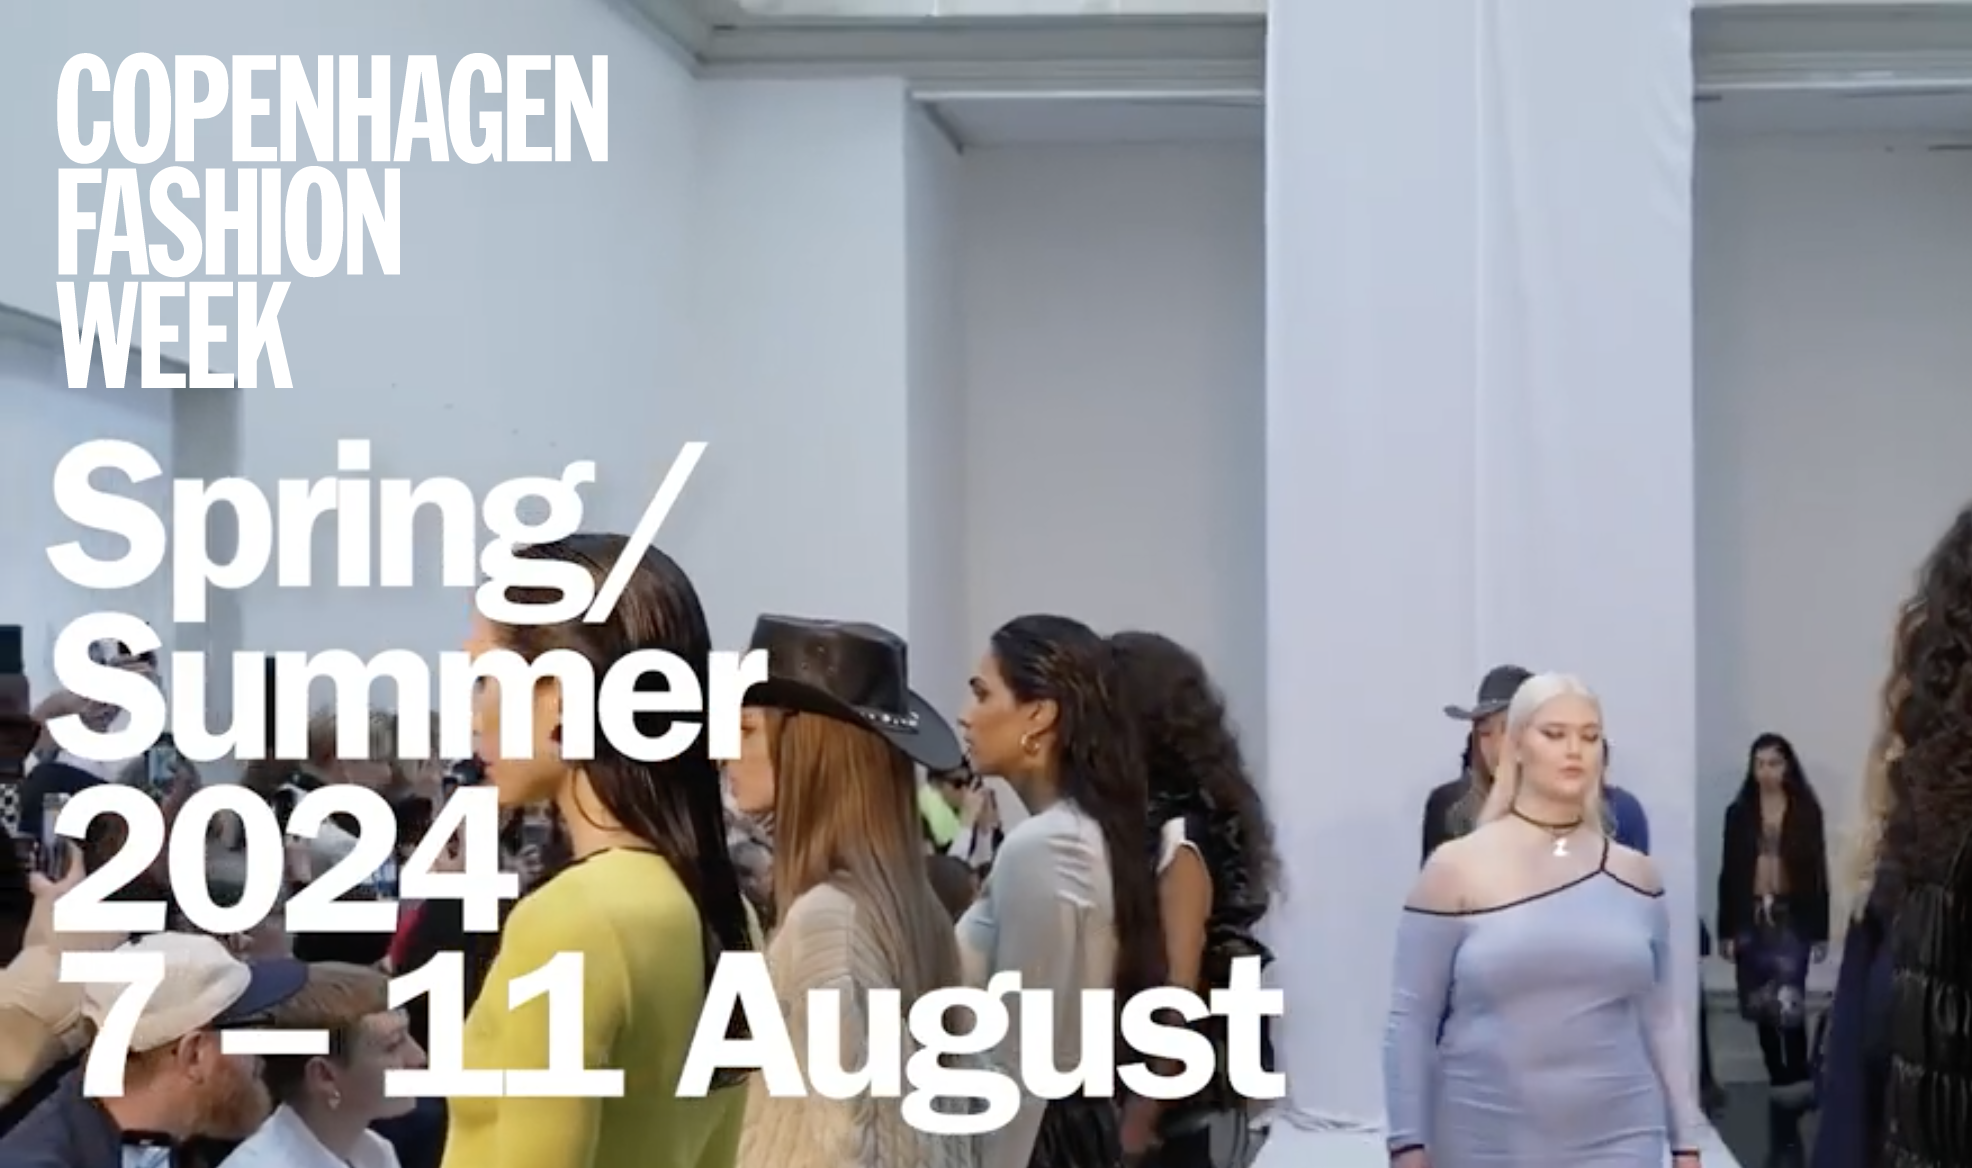 Copenhagen fashion week spring/summer 2024 august nostrangermanagement